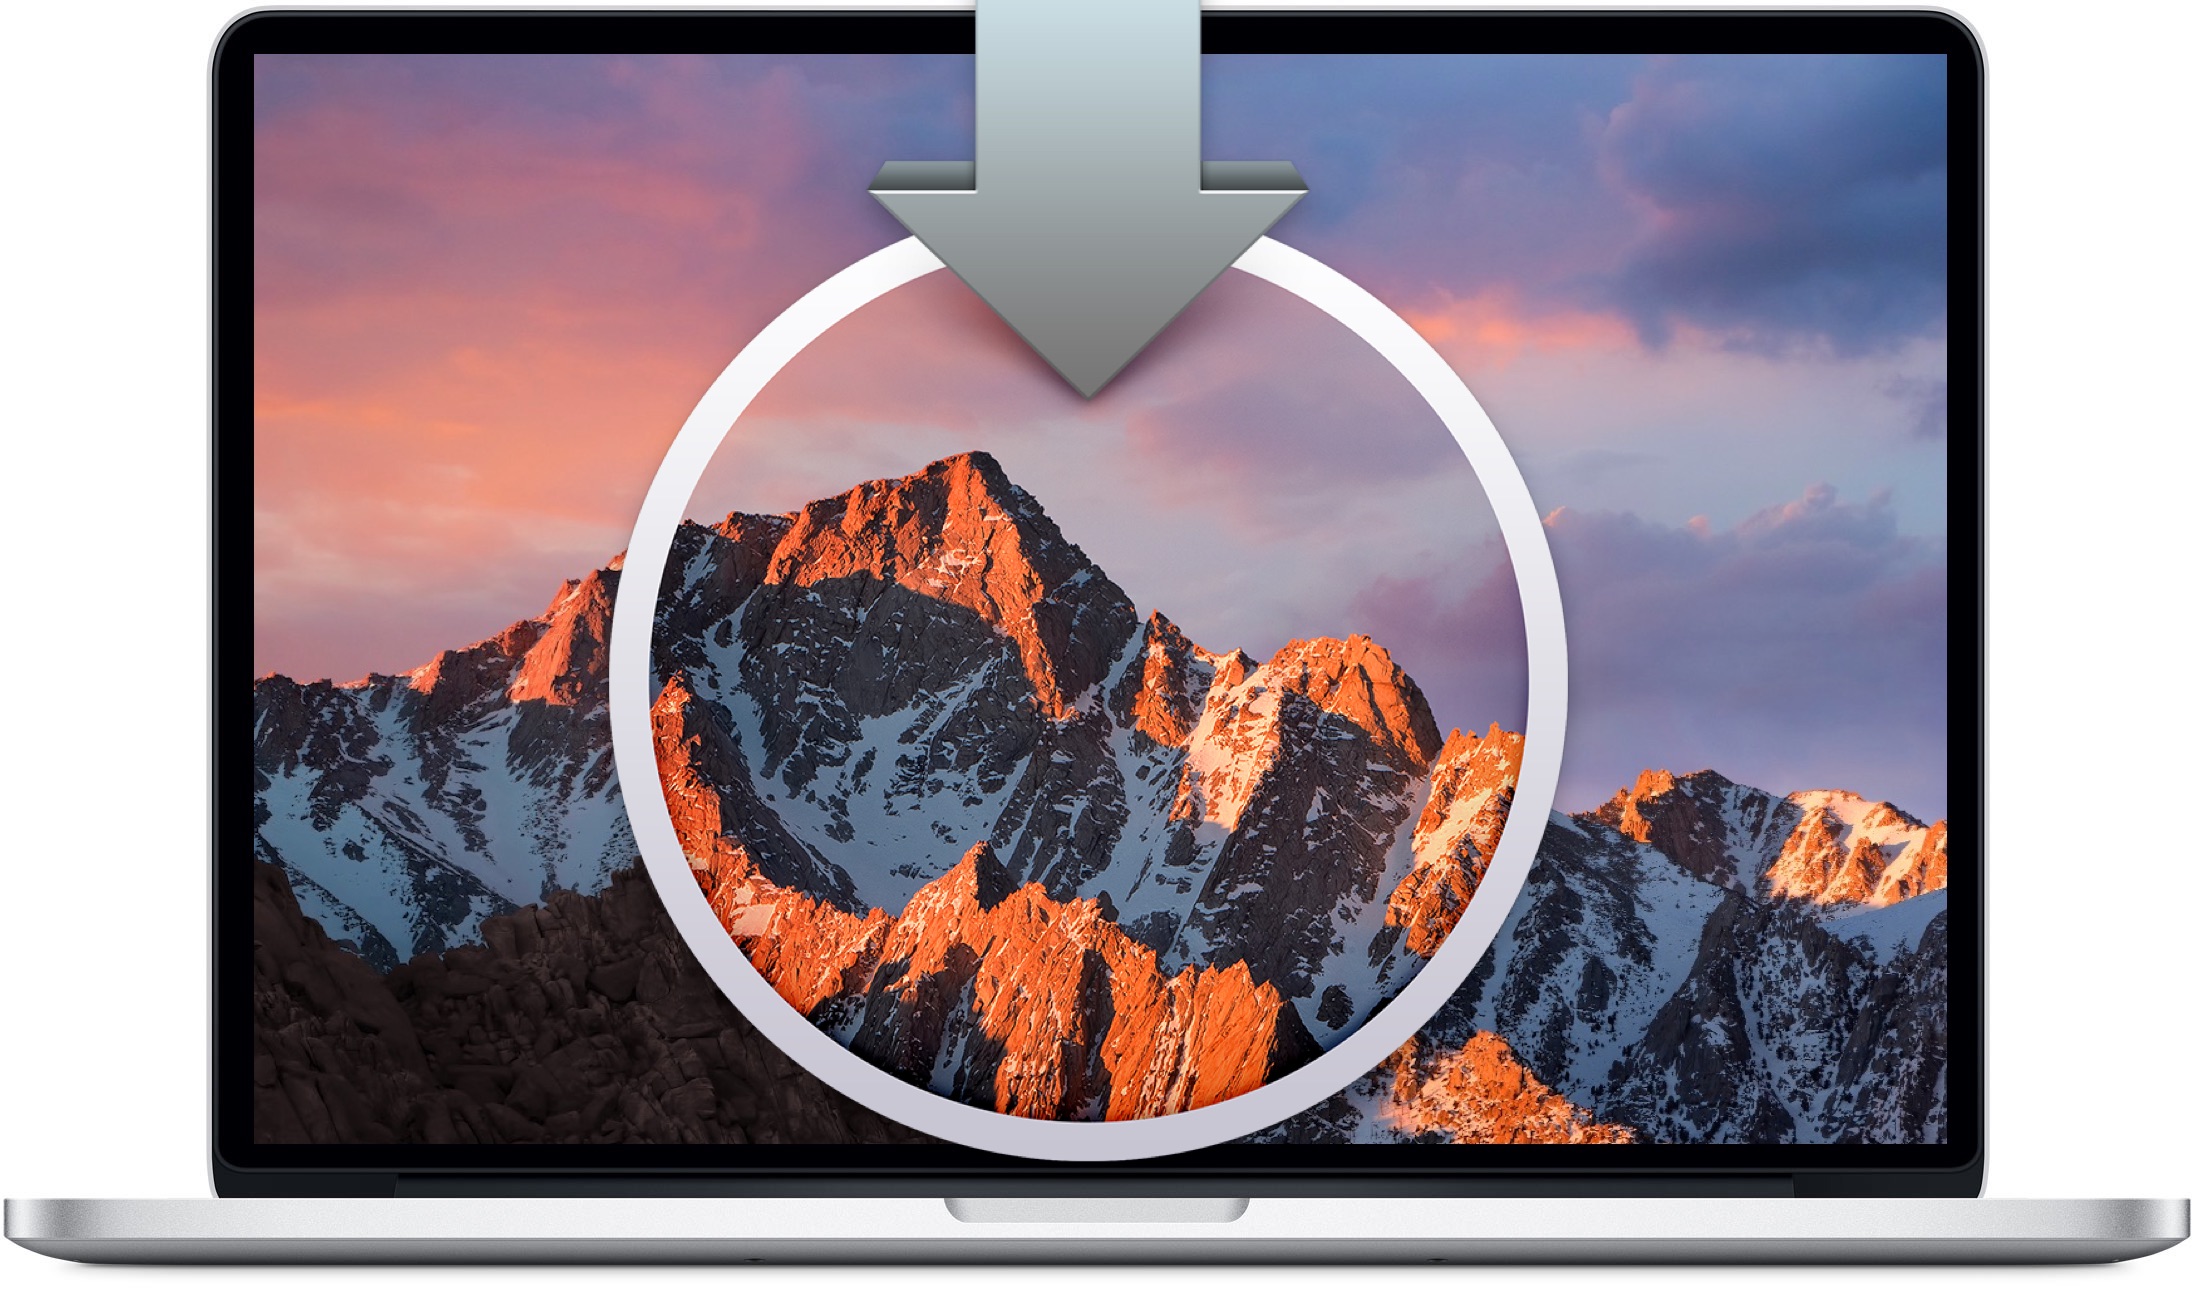 mac os 10.12 assign apps to desktop